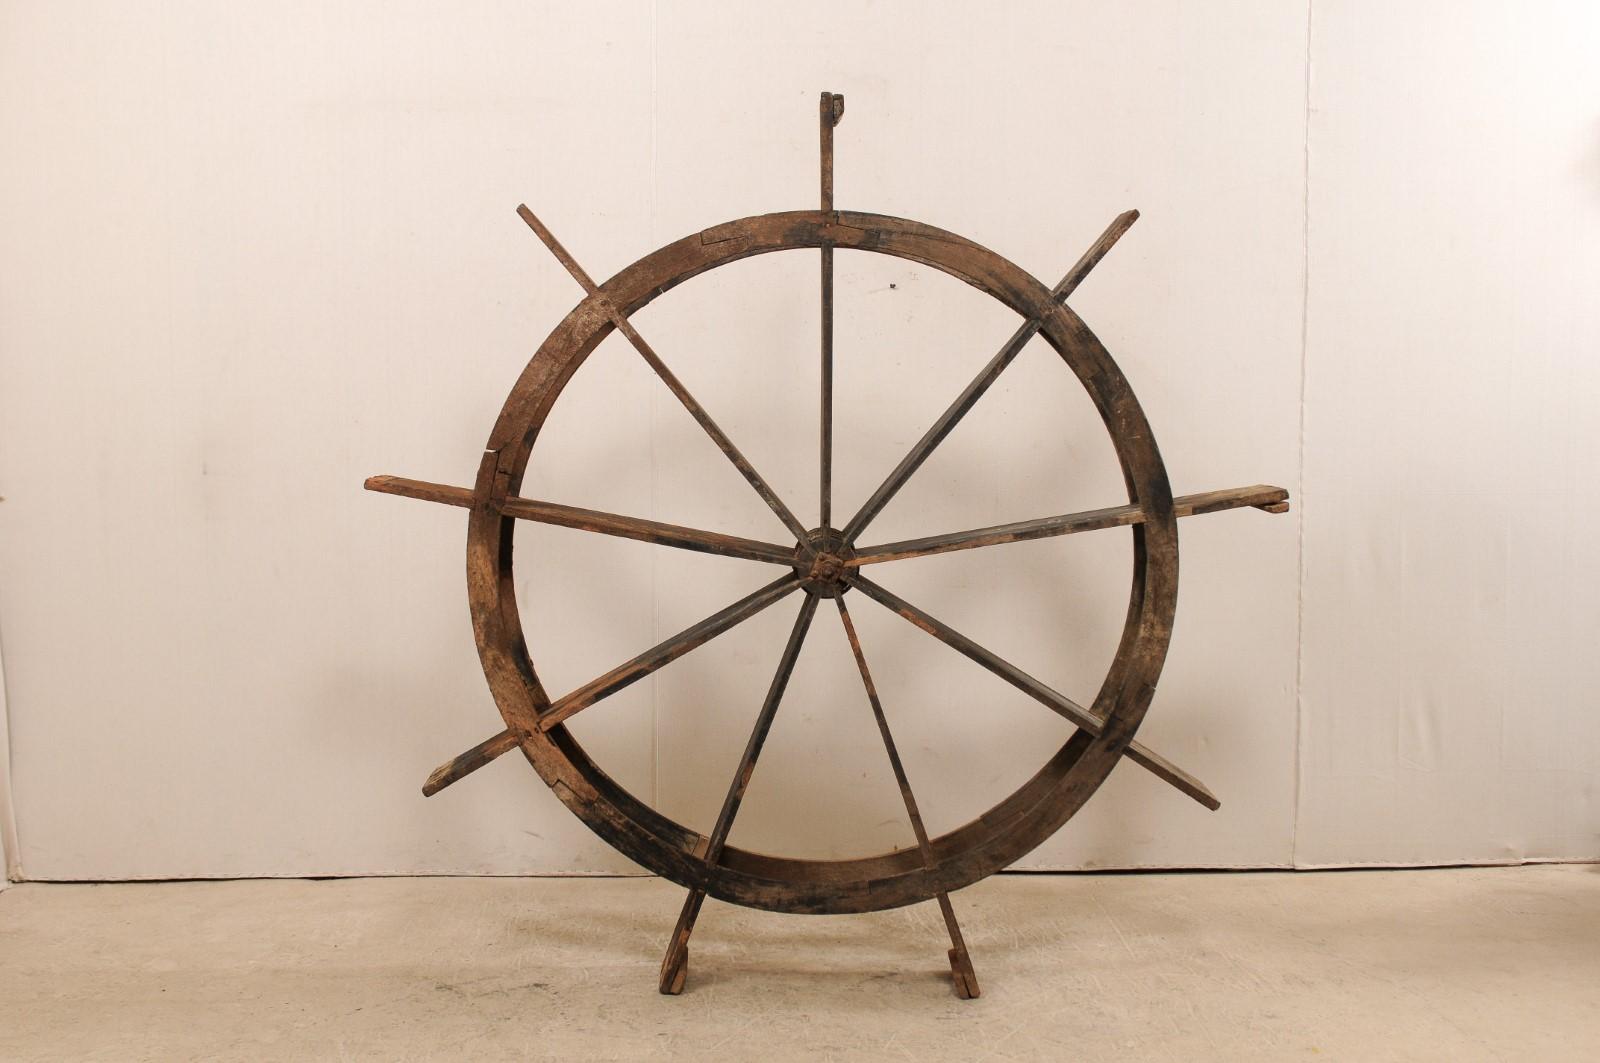 Une grande roue à eau antique du Kerala, en Inde. Cette roue à eau du Kerala, d'une hauteur d'environ 1,80 m, également connue sous le nom de 